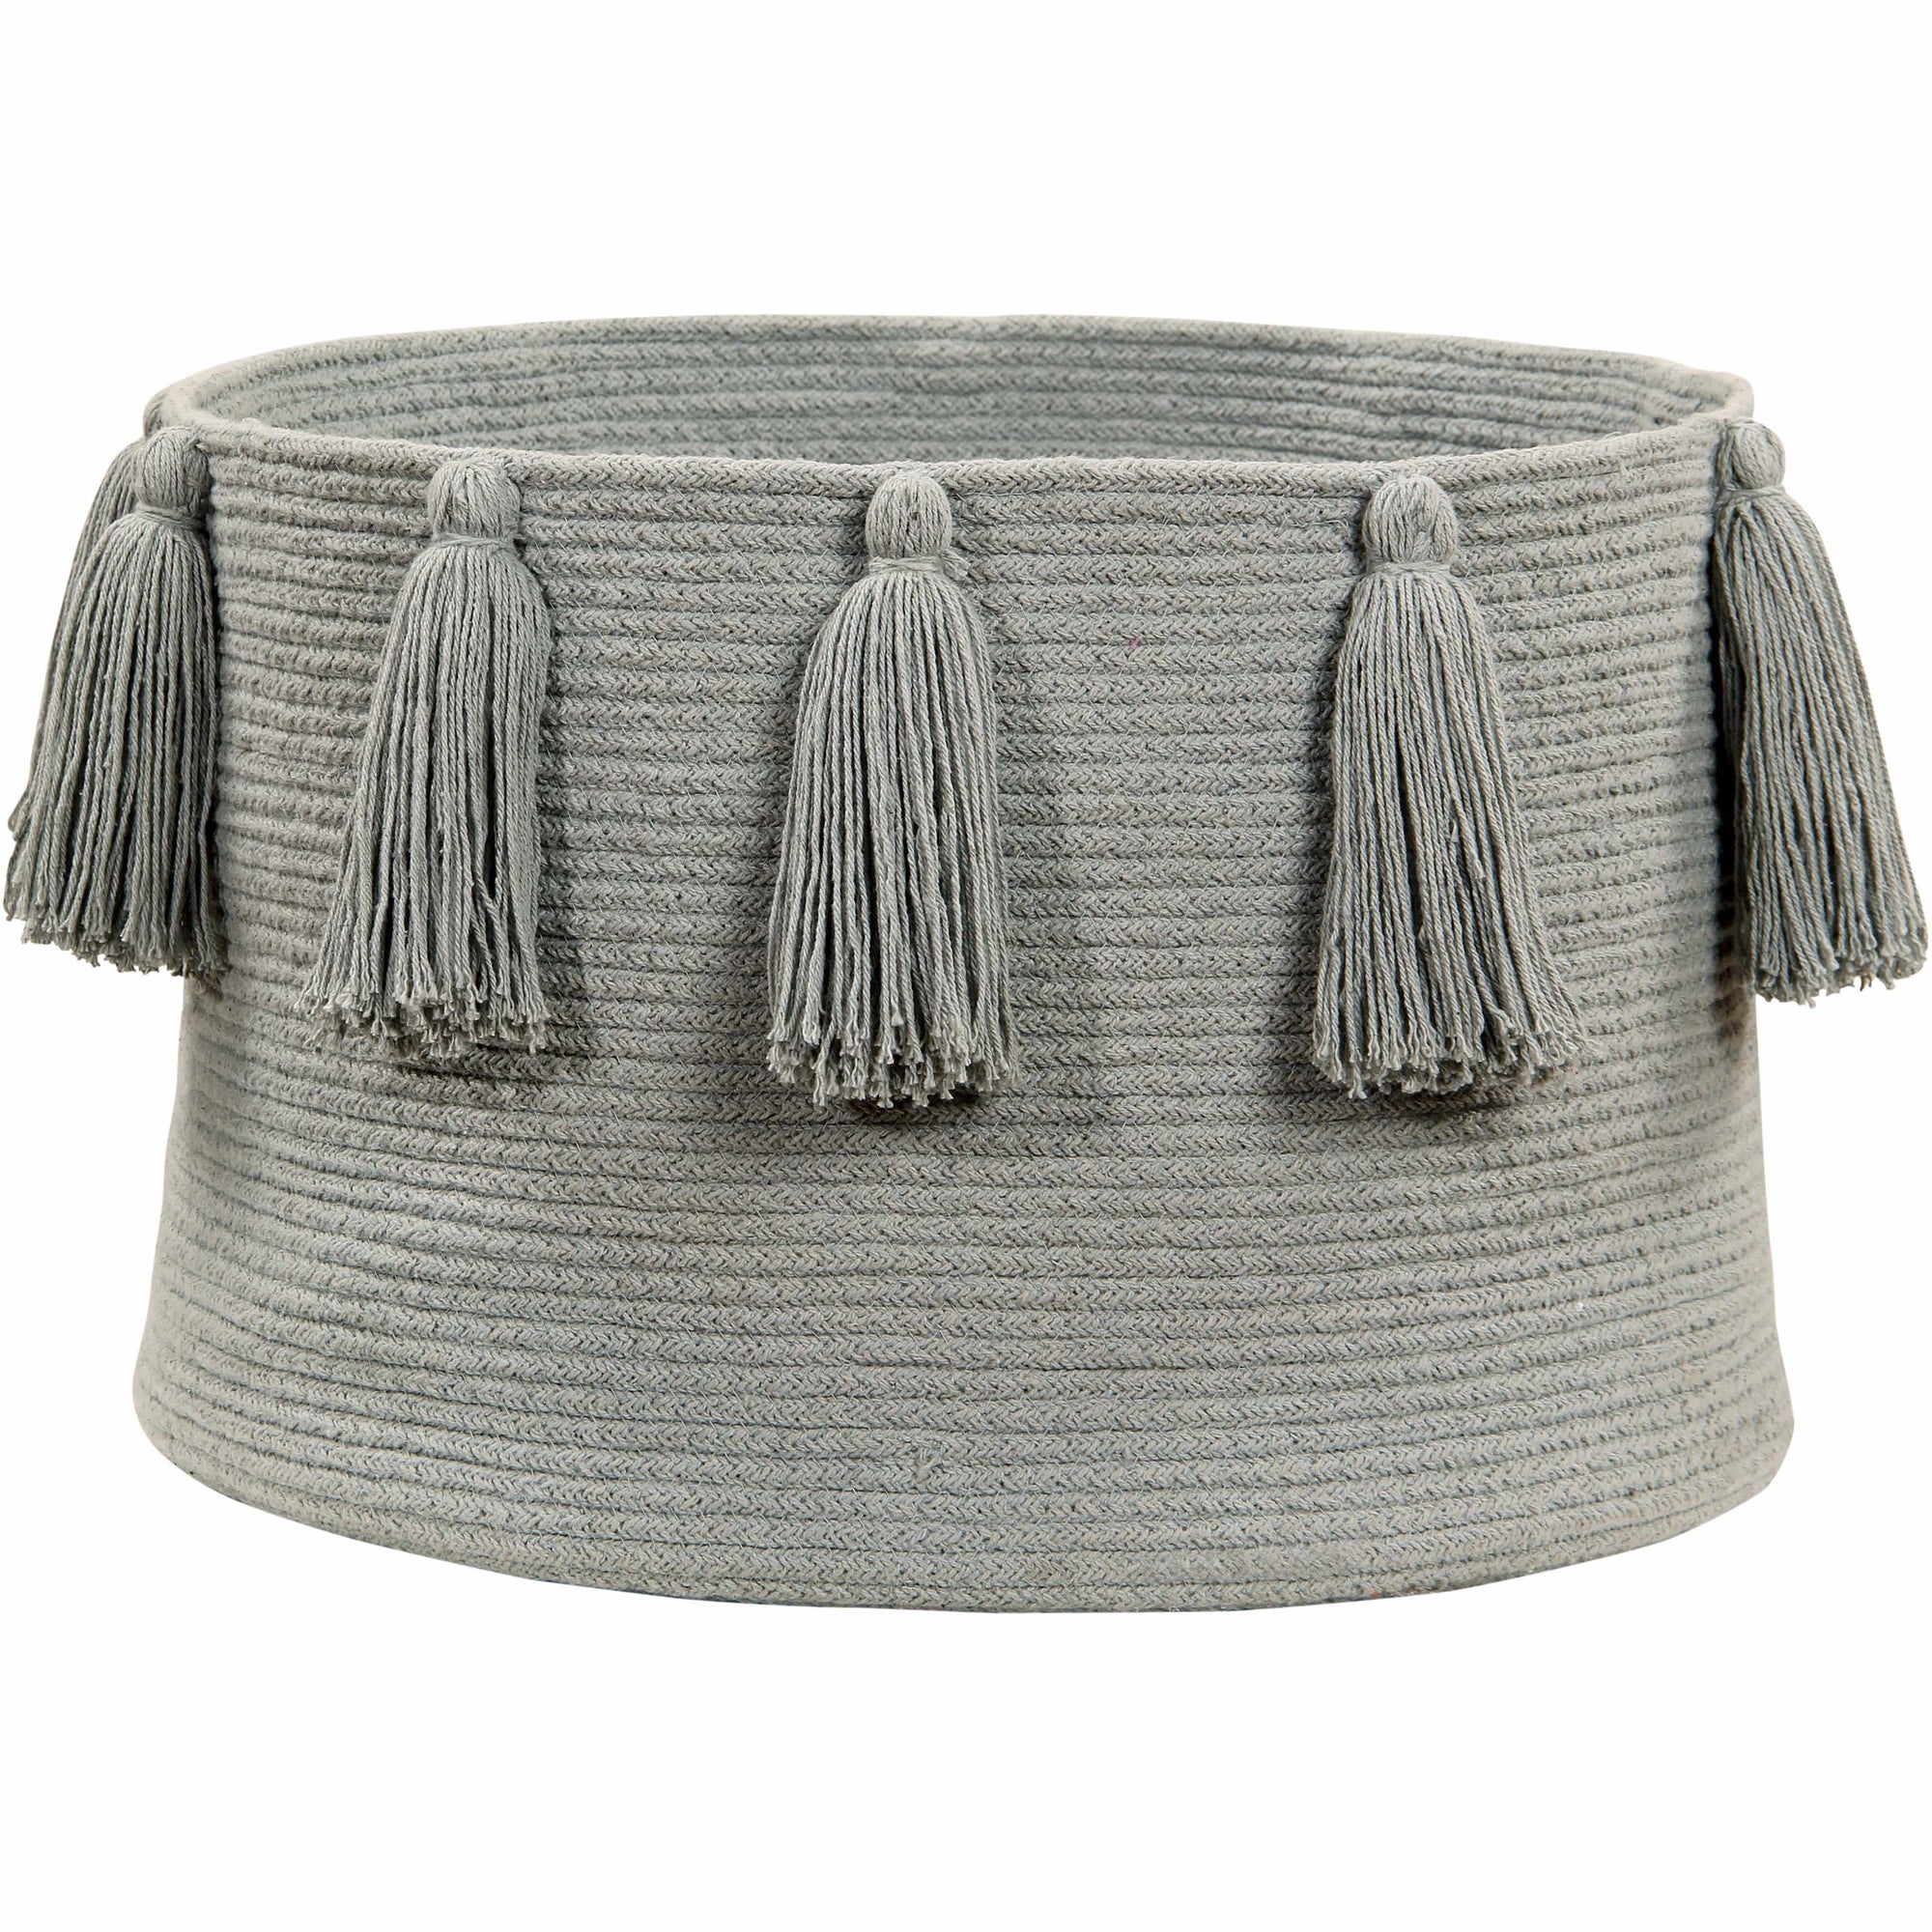 Rugs by Roo | Lorena Canals Tassels Light Grey Basket-BSK-TAS-LGR